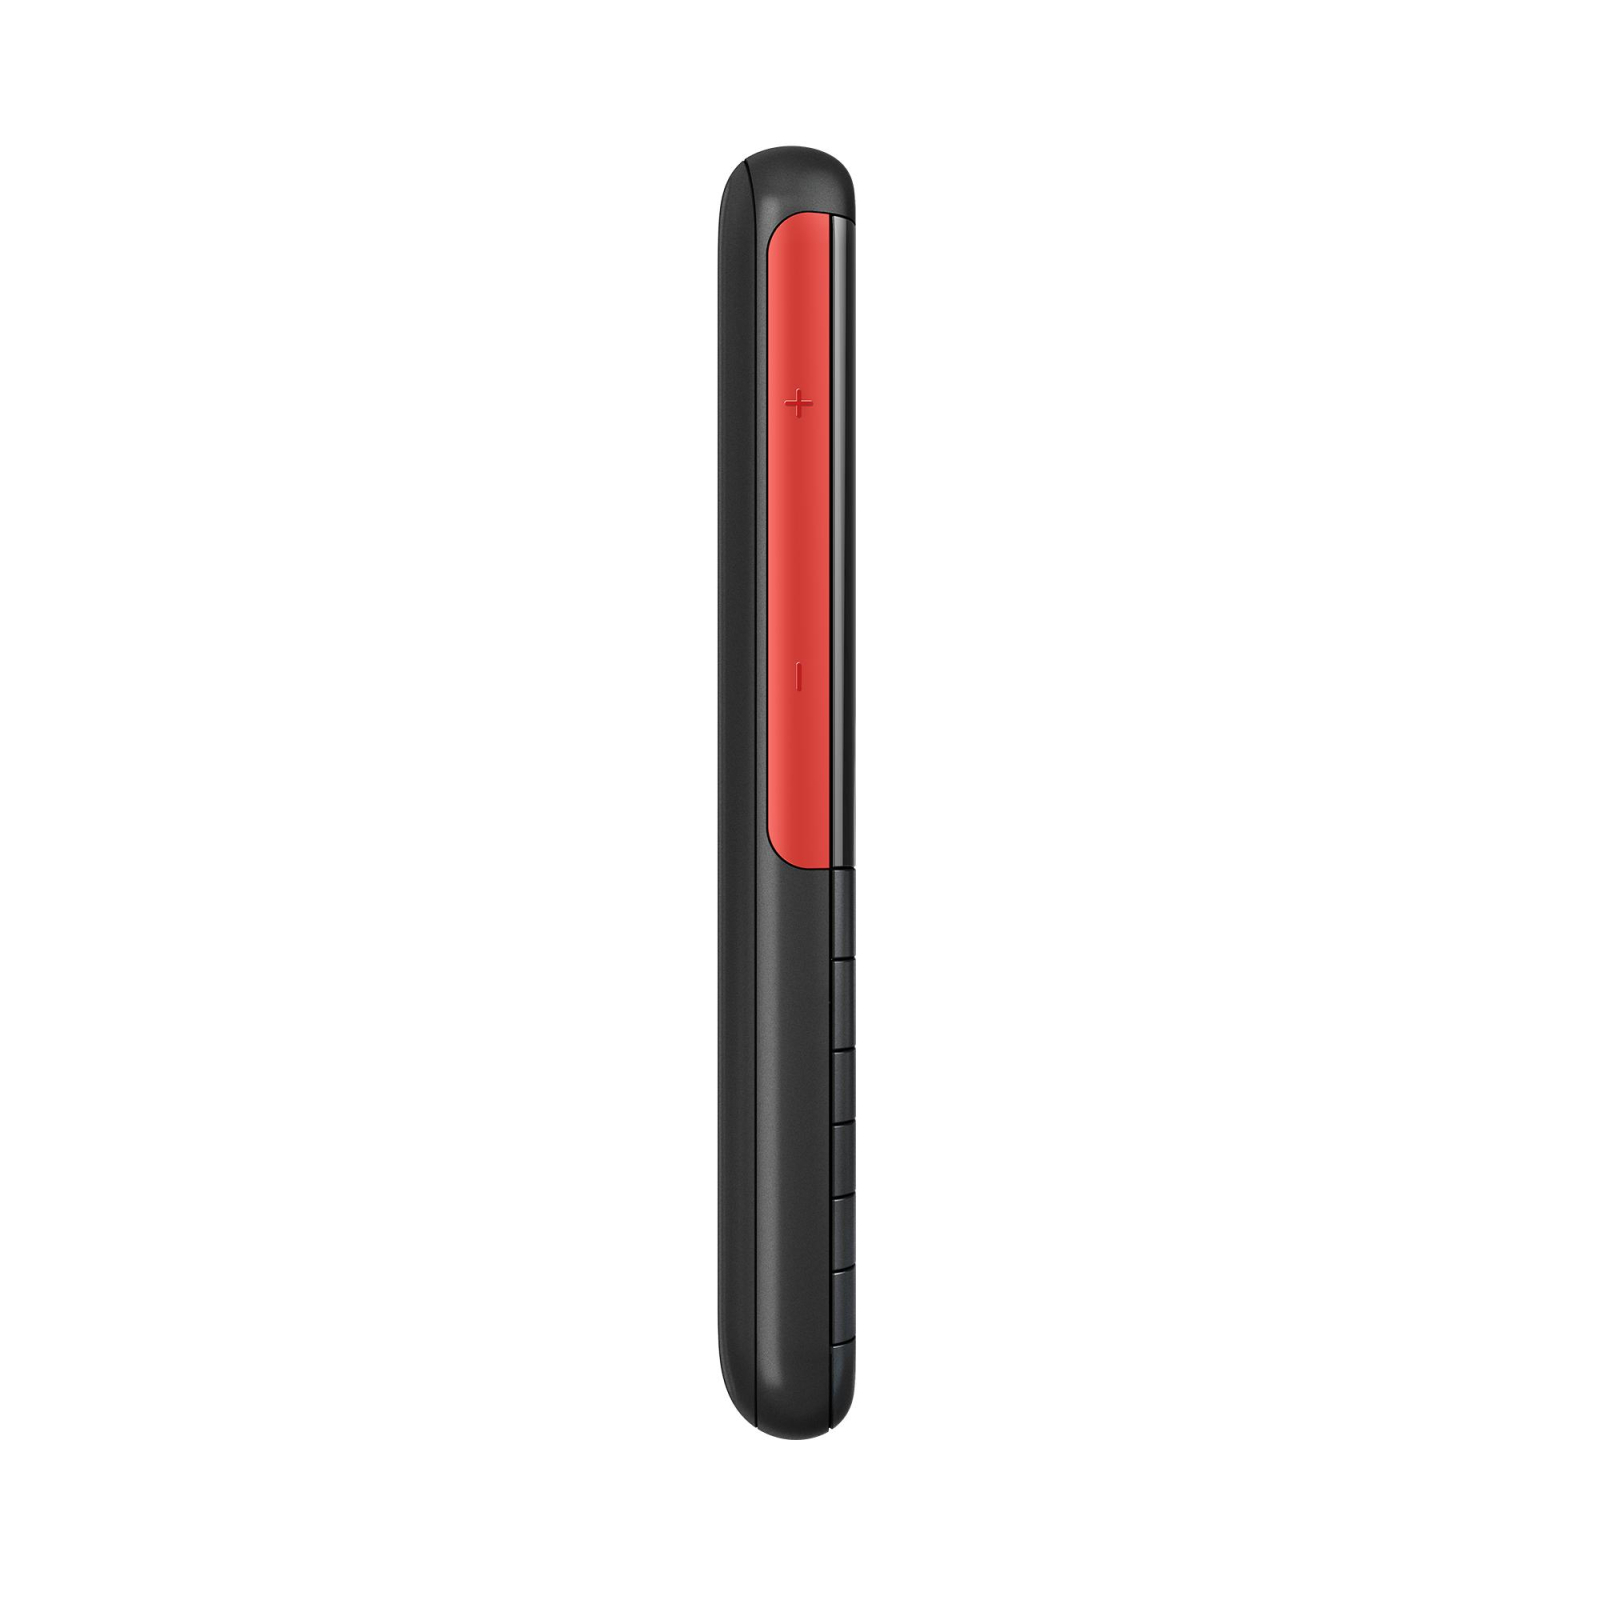 Мобильный телефон Nokia 5310 DS White-Red изображение 5